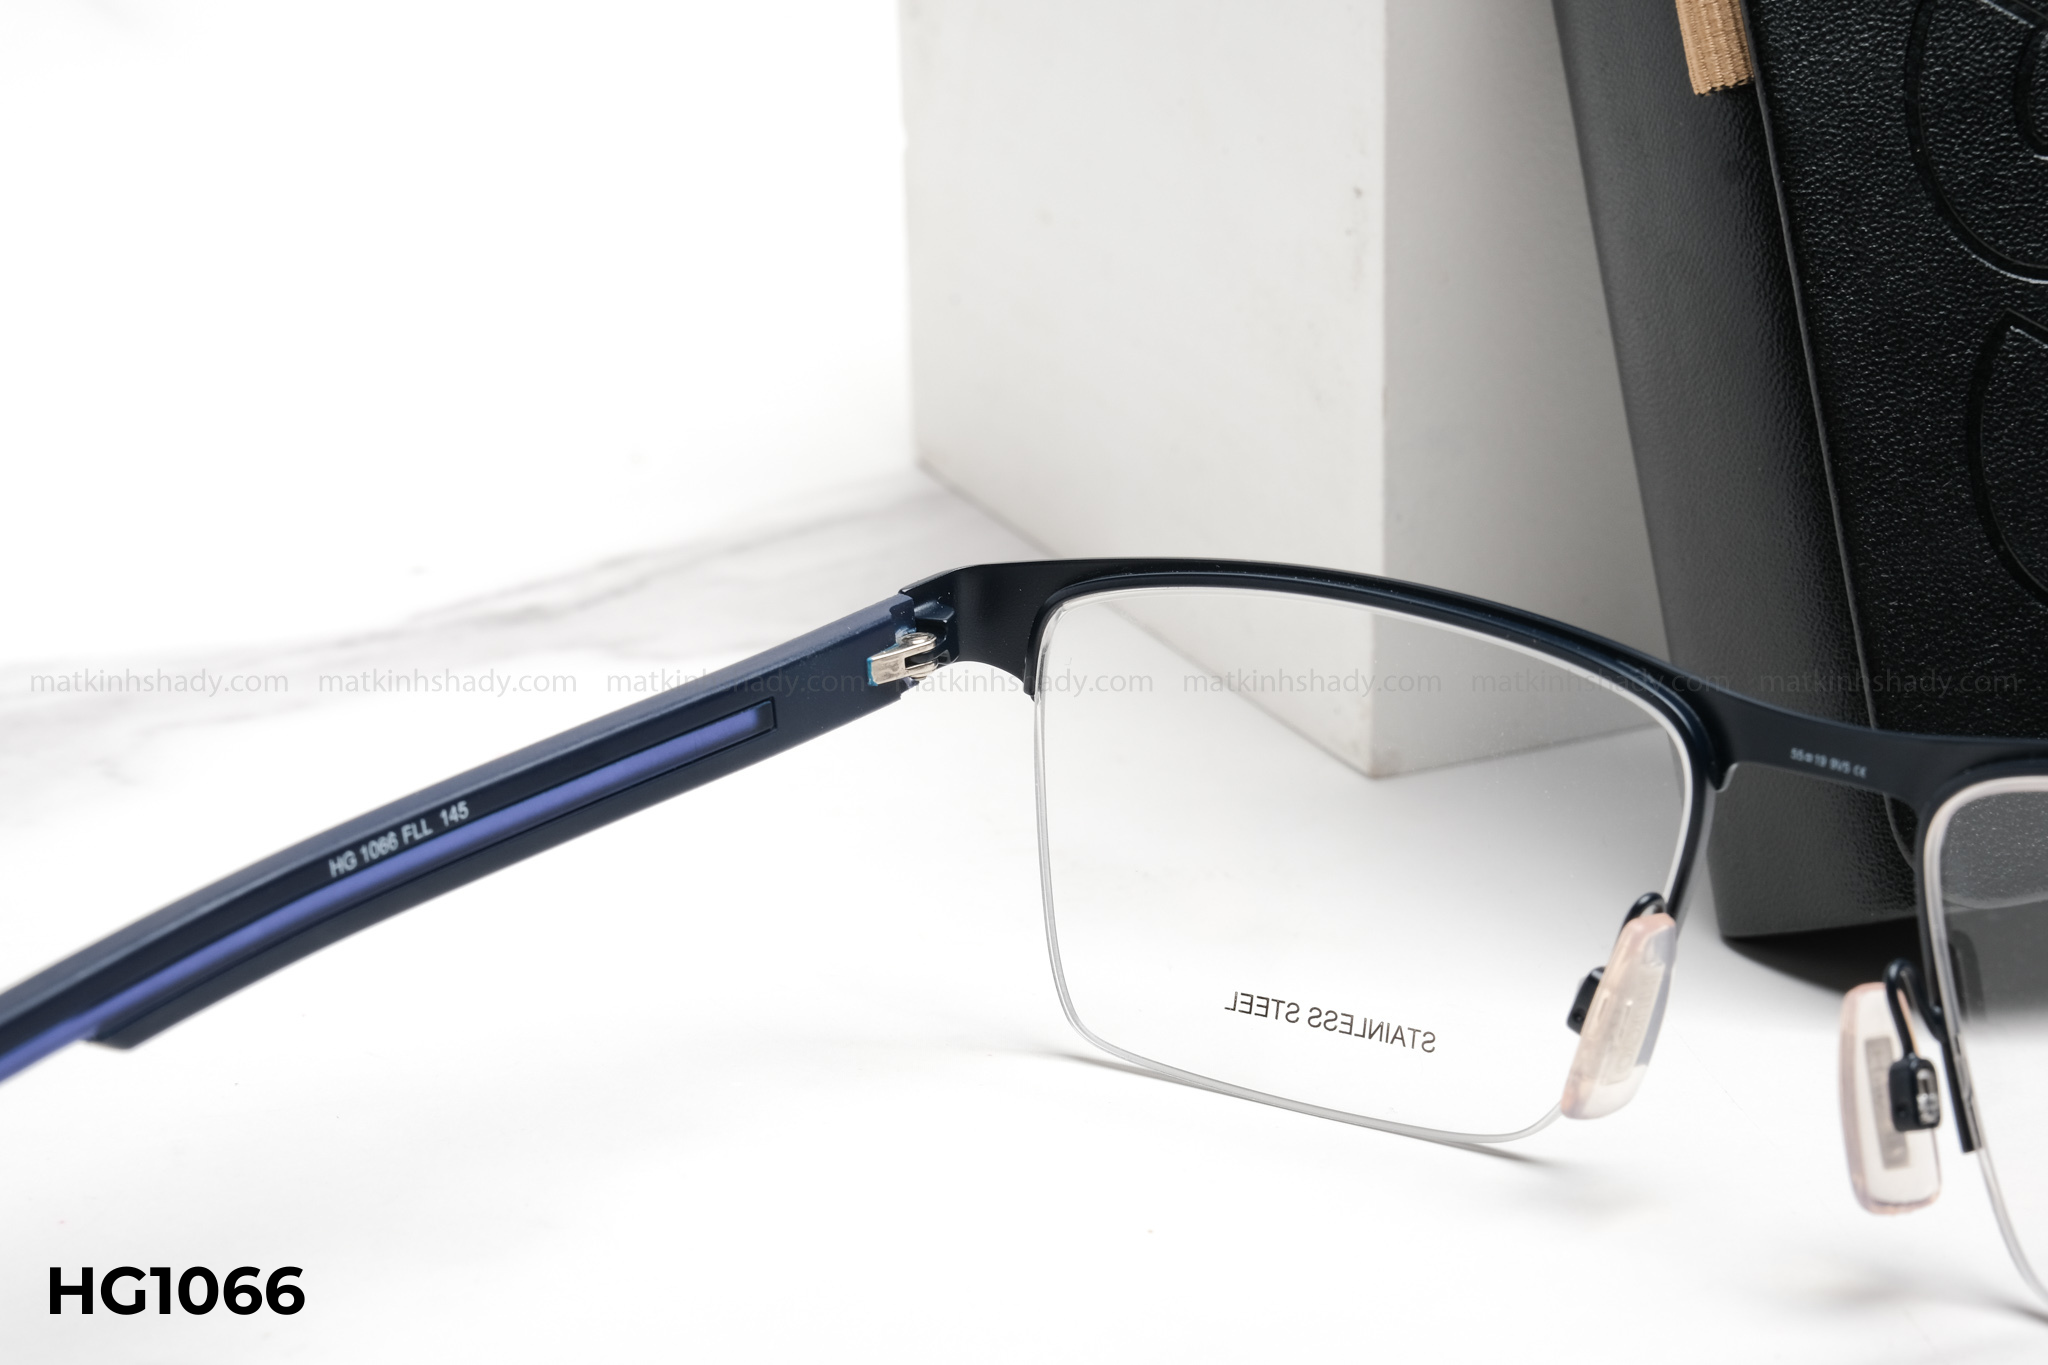  Hugo Boss Eyewear - Glasses - HG1066 